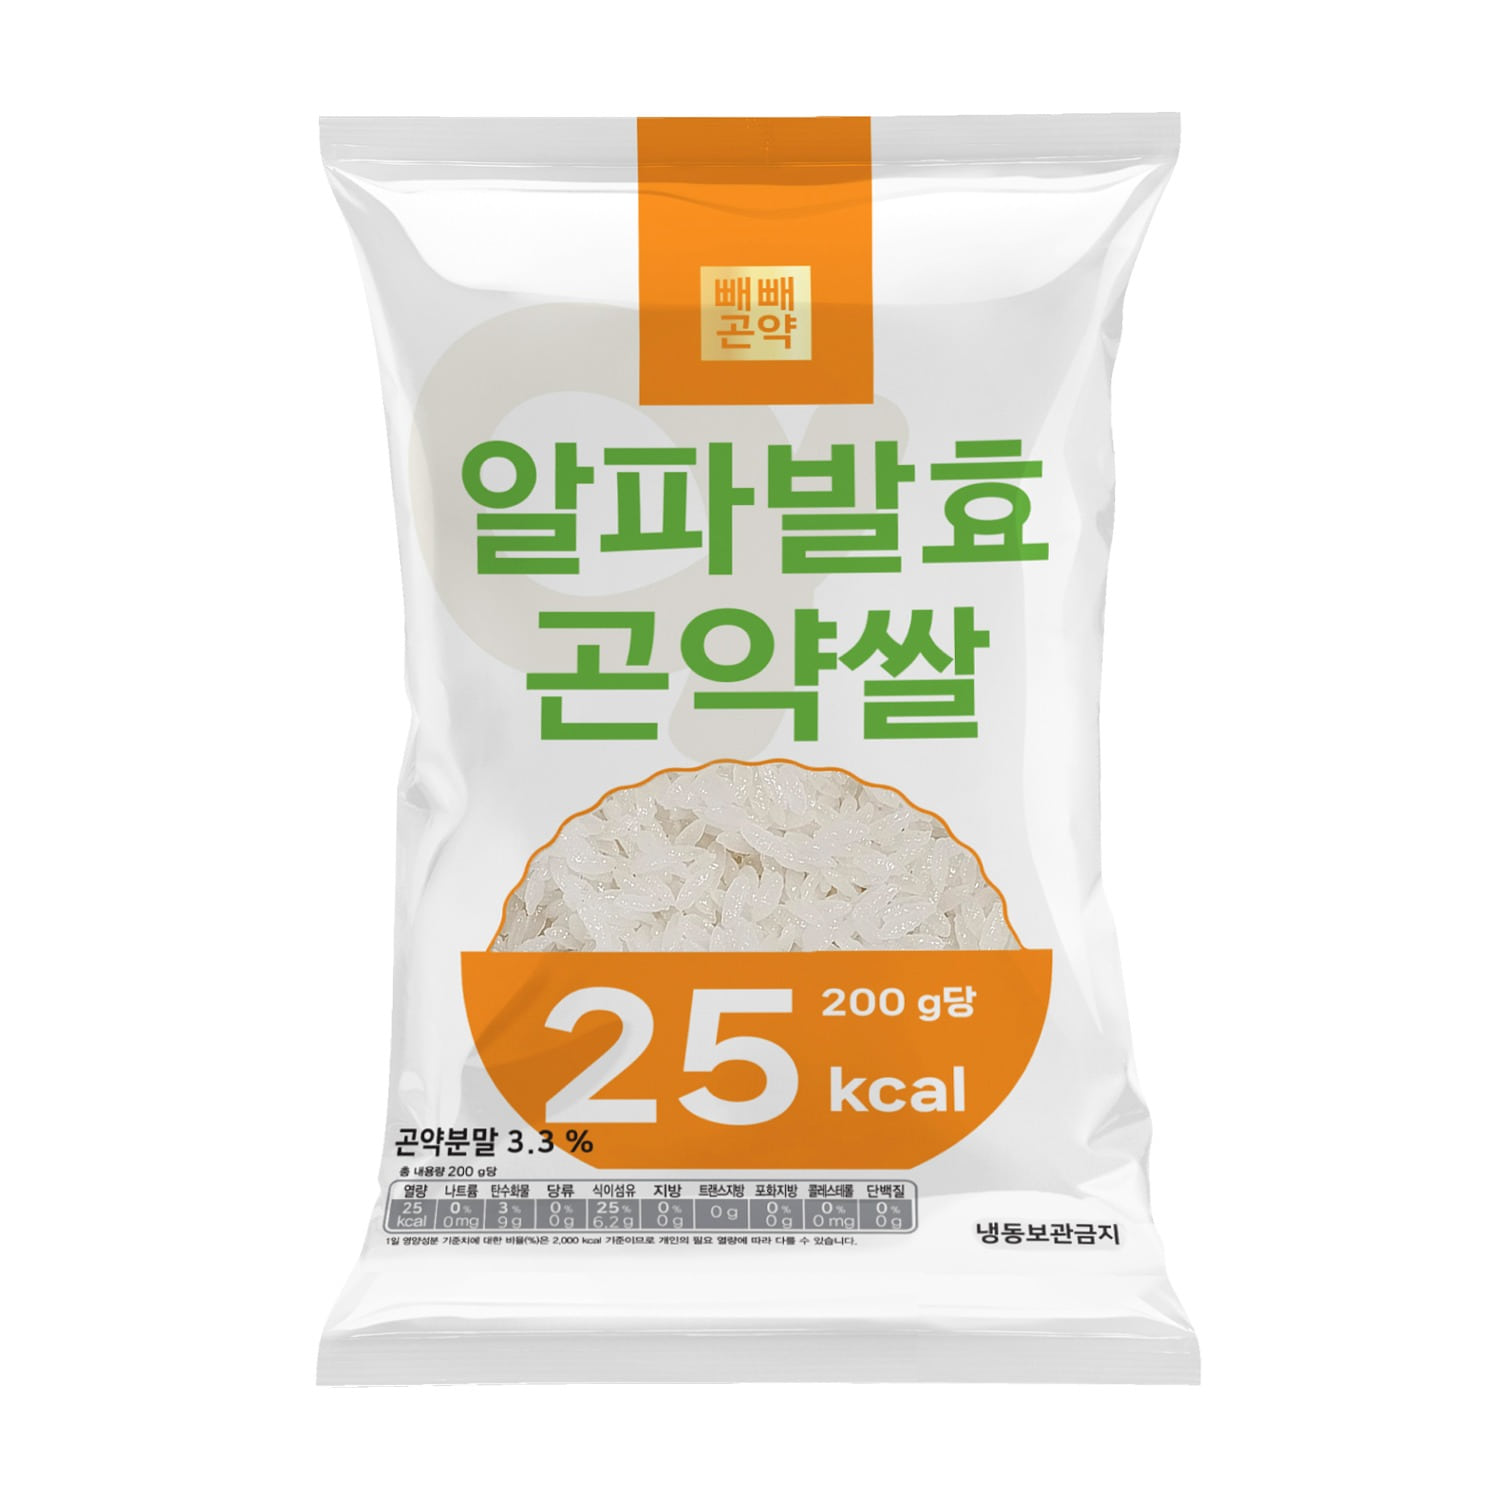 빼빼곤약 알파발효곤약쌀 200g x 1팩 (100g당 12.5kcal)